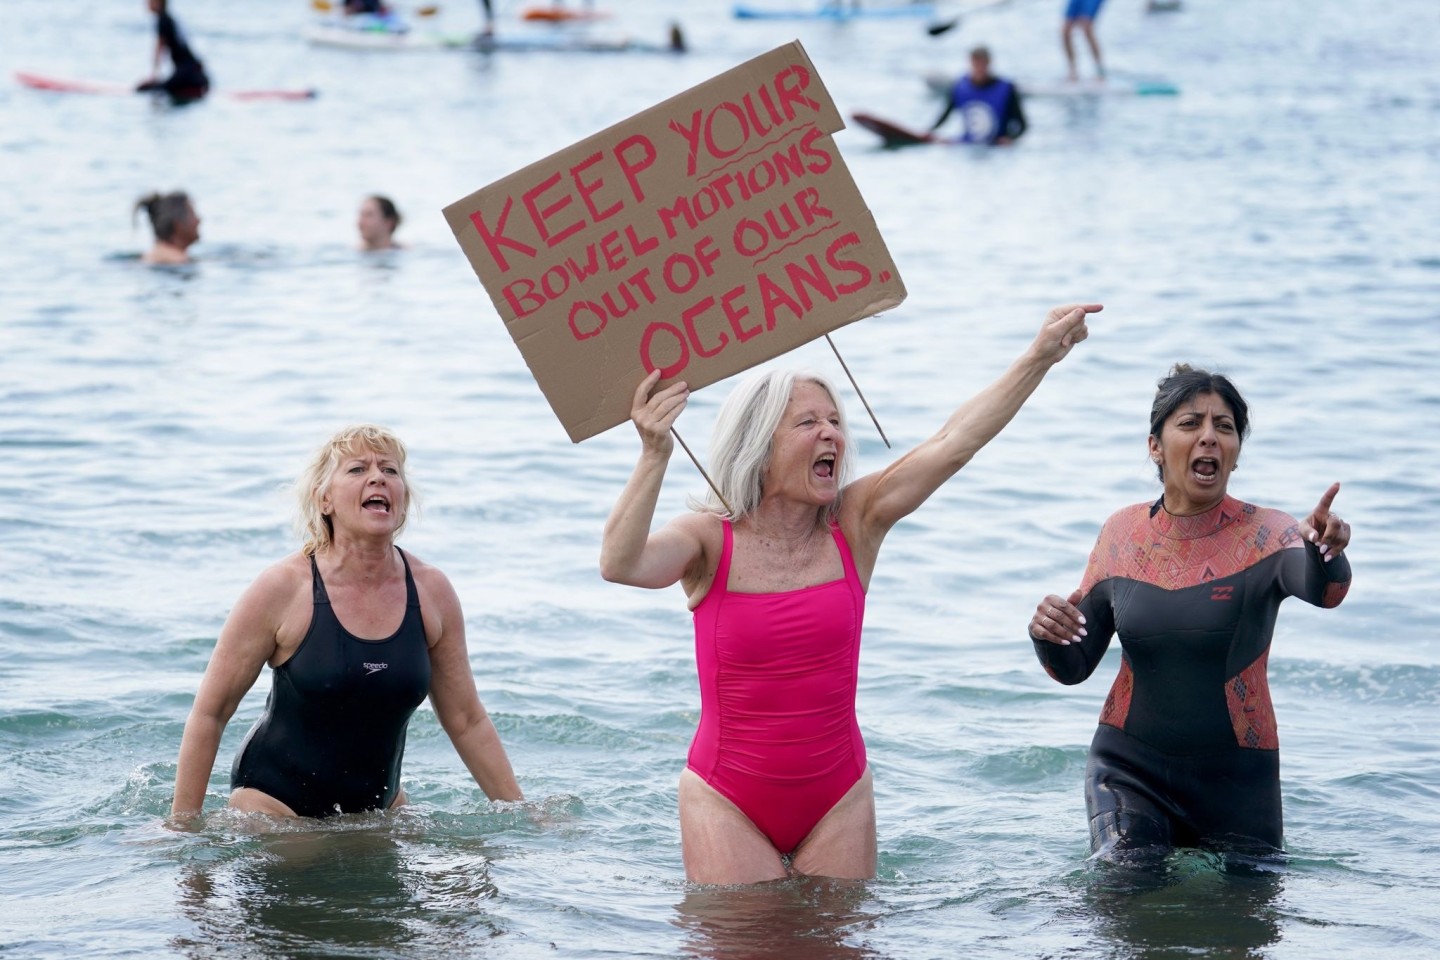 Protest am Brighton West Pier in East Sussex gegen die Wasserverschmutzung.